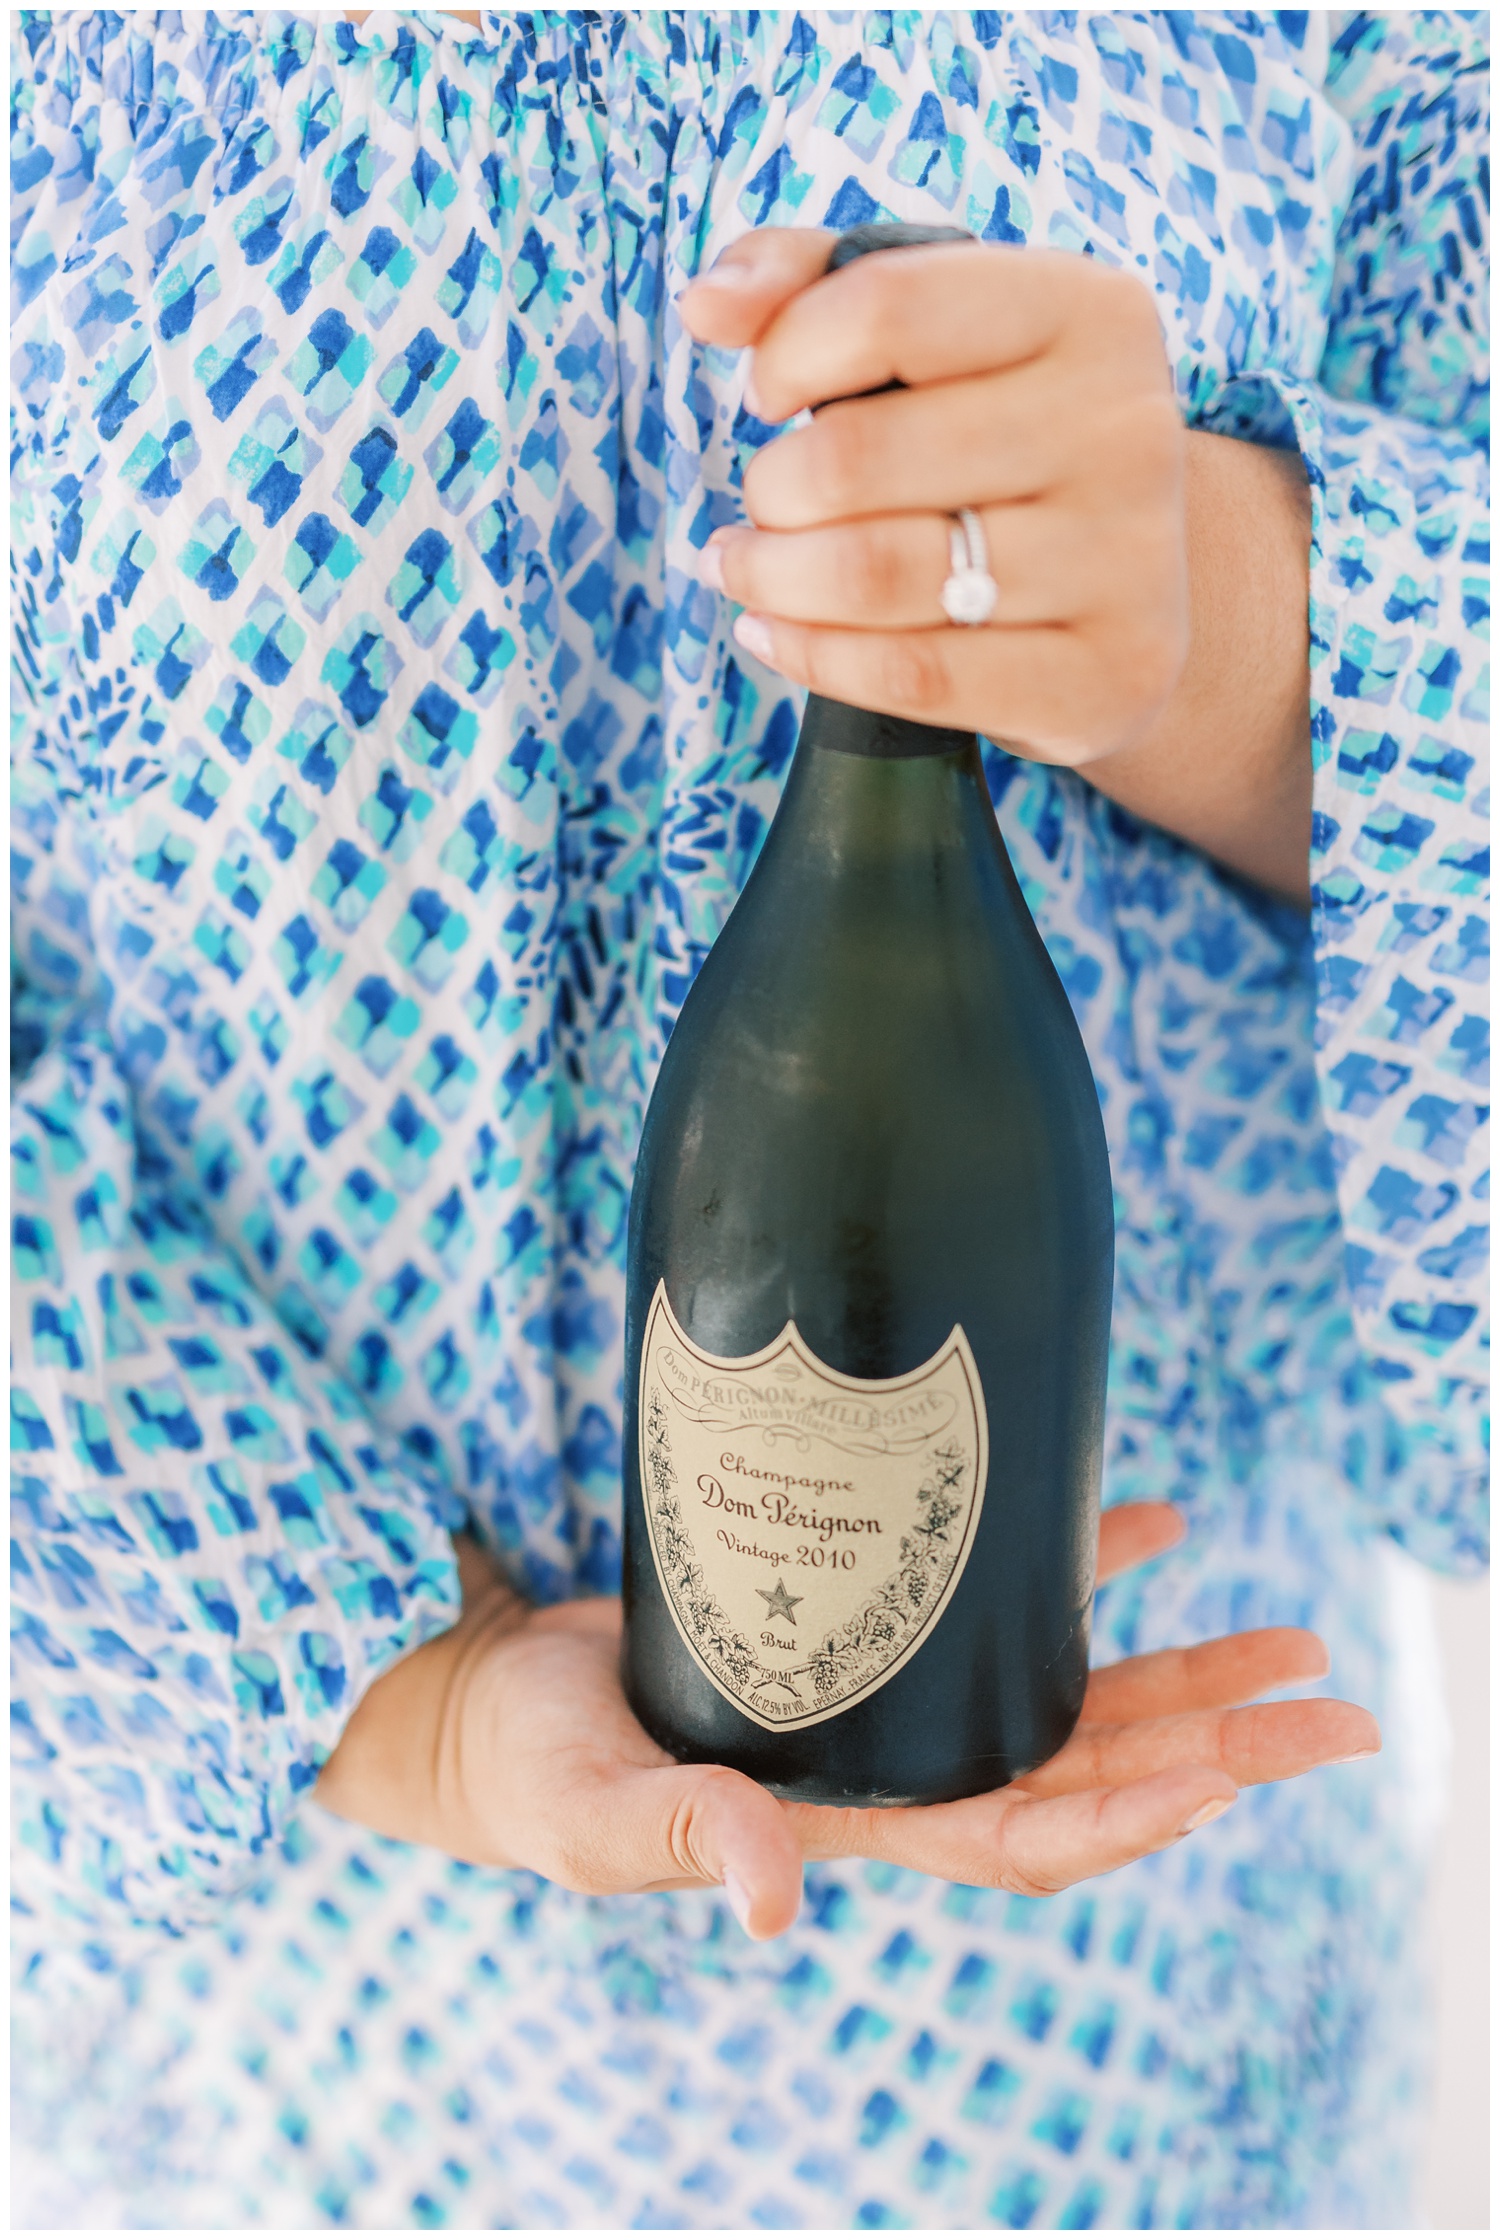 Dom Perignon champagne at wedding